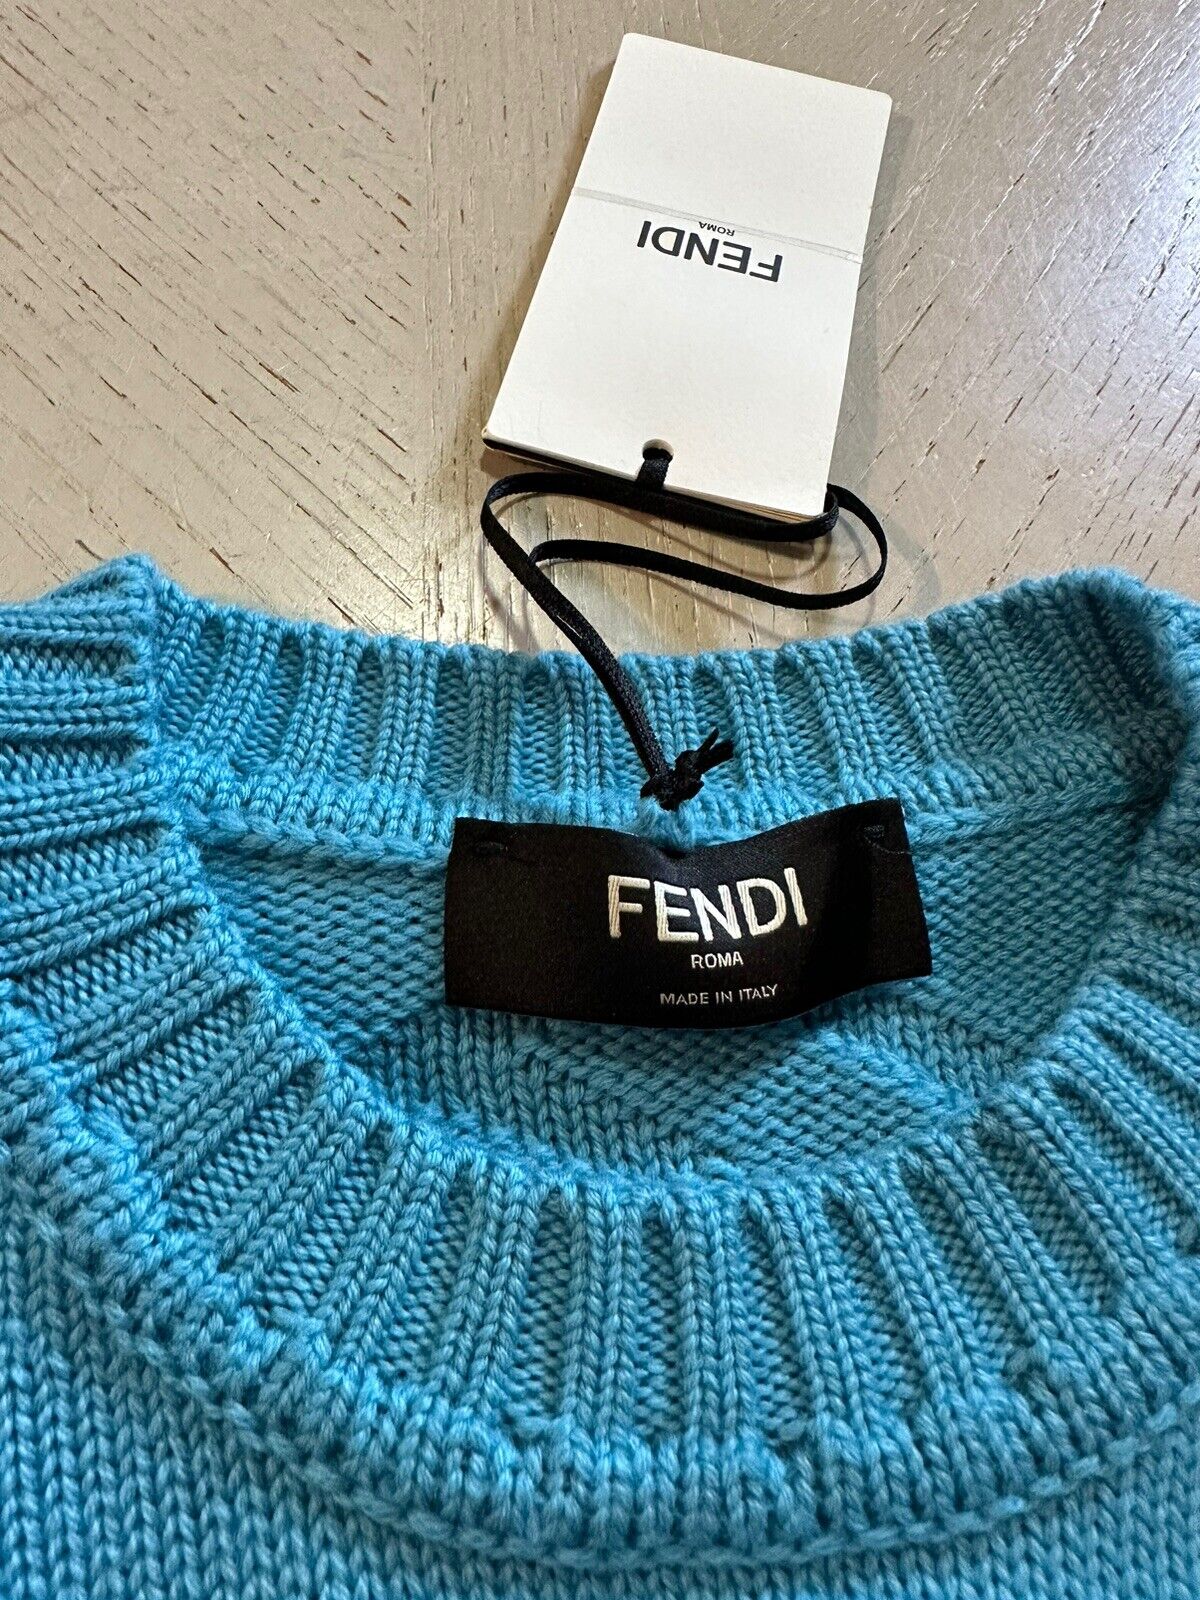 NWT $1100 Fendi Men FF Logo Crewneck Sweater Pullover Sky Blue L US/52 Eu